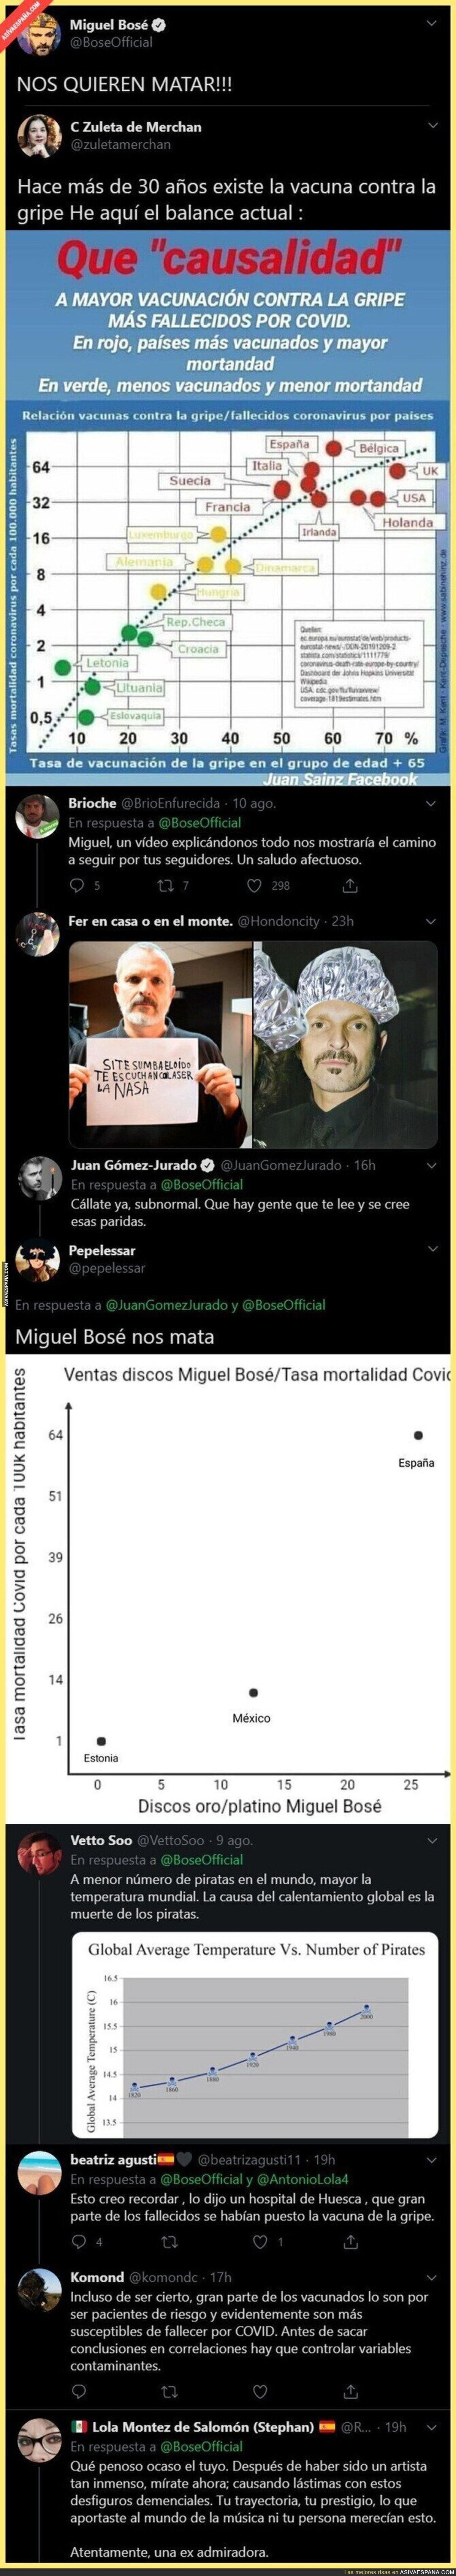 Miguel Bosé se convierte en el hazmerreír de Twitter por esta falsa relación de la vacuna de la gripe y la muerte por coronavirus